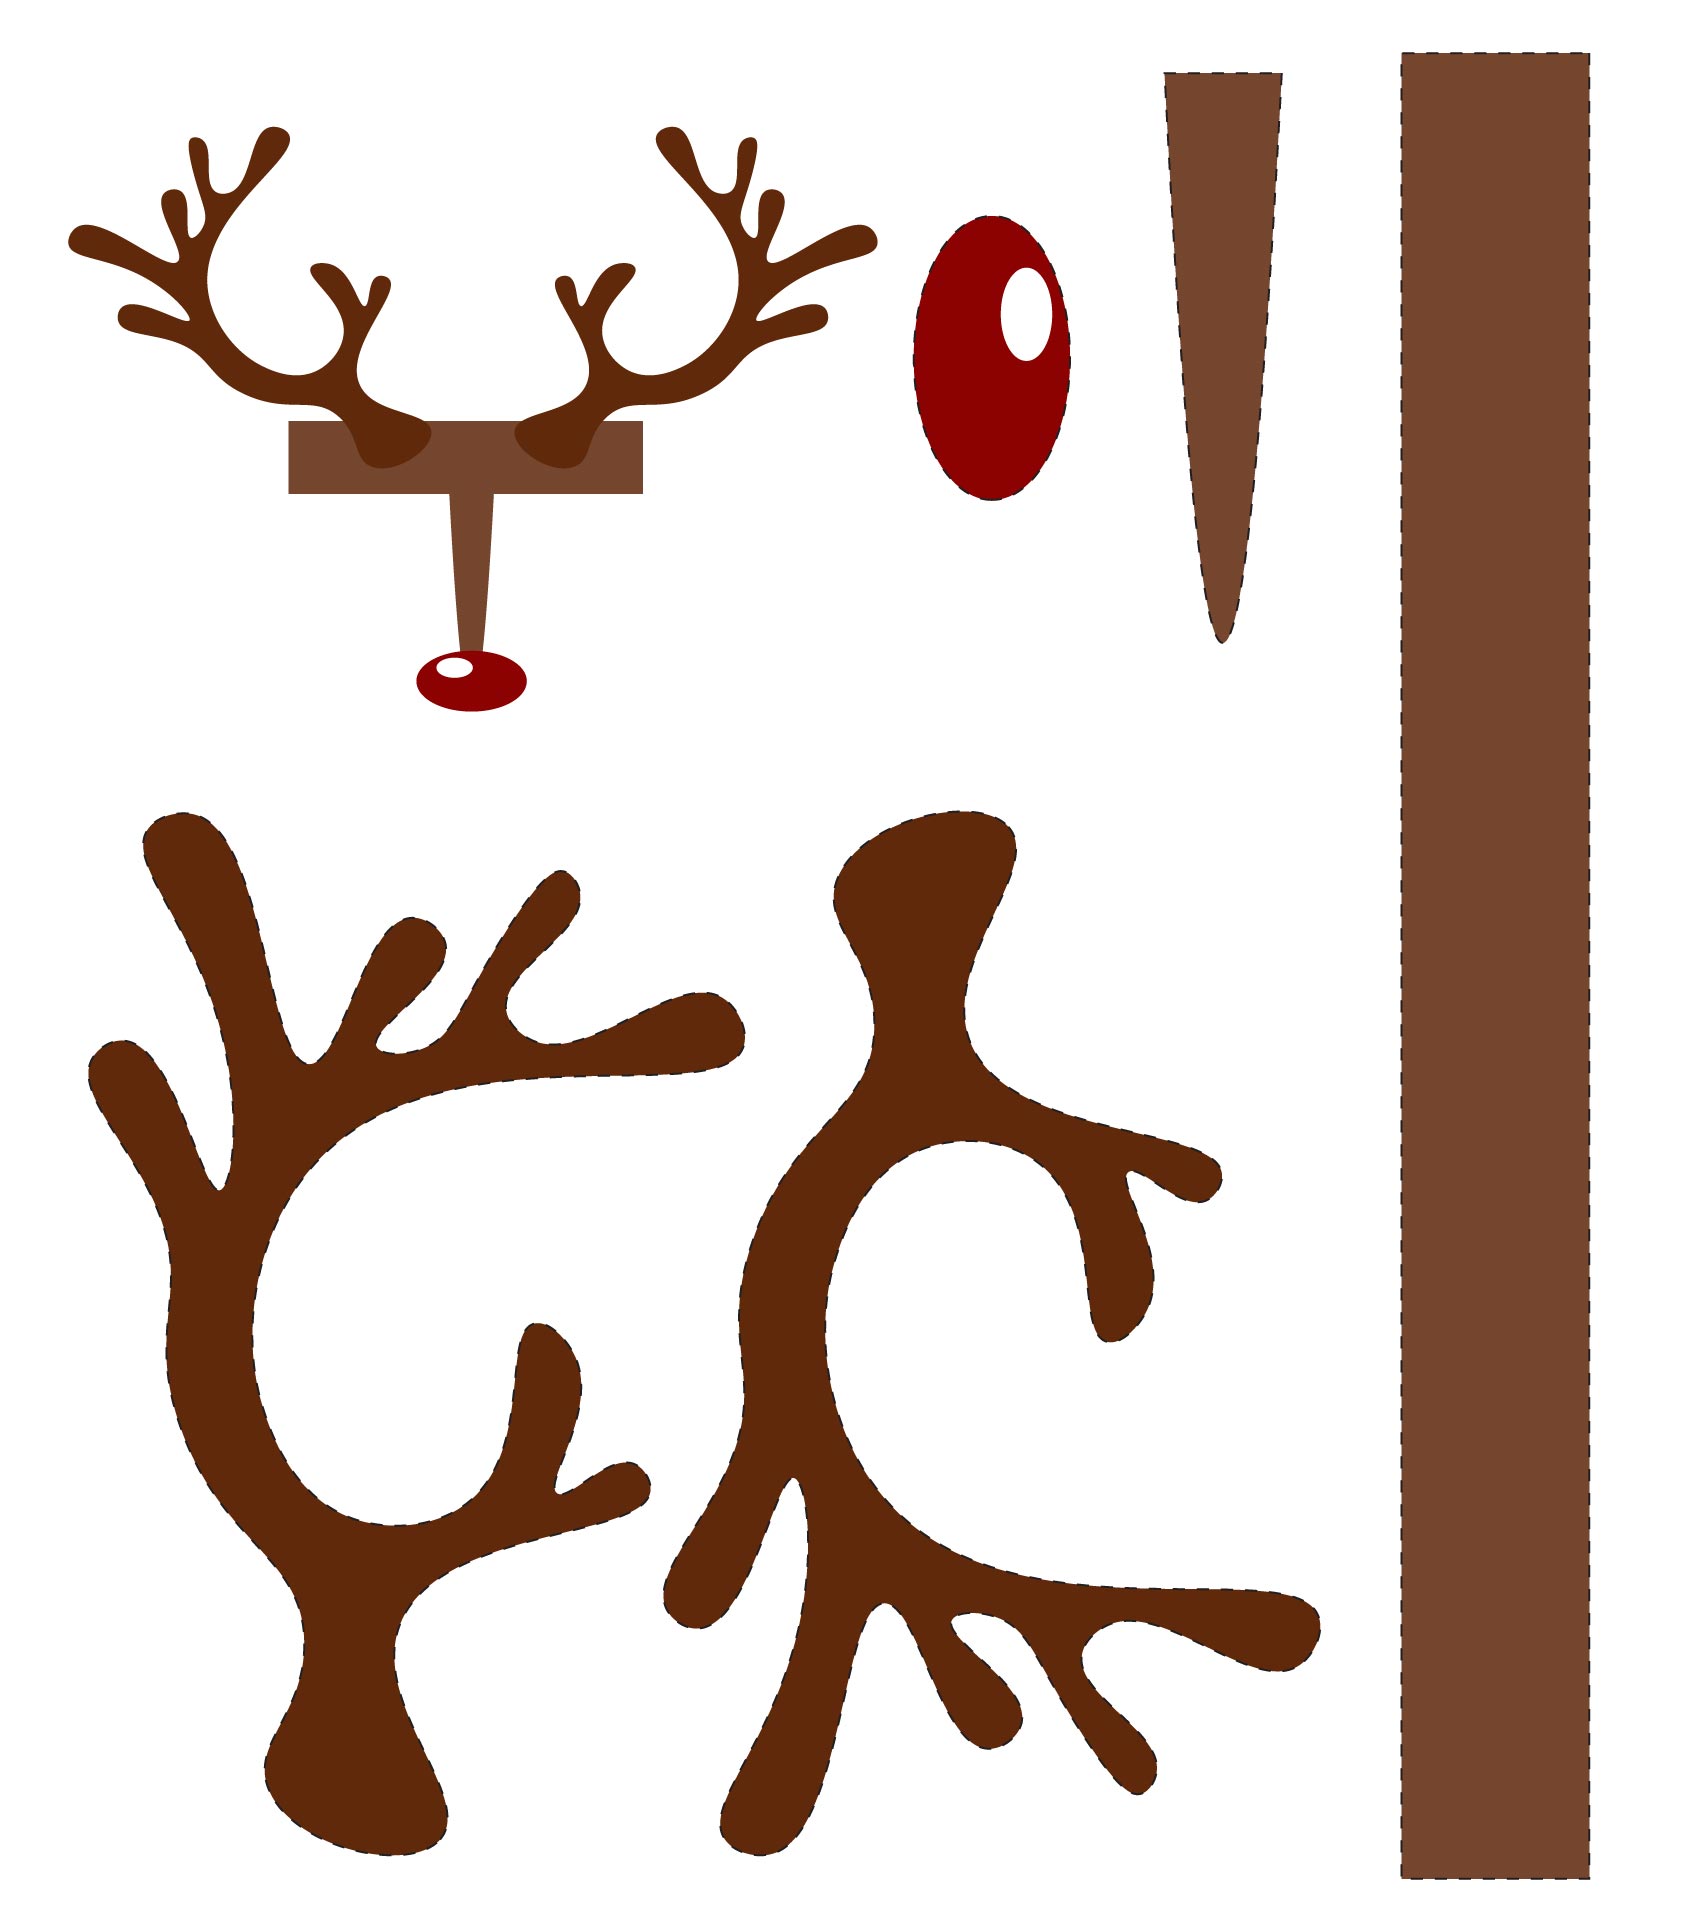 Reindeer Antler Template - 6 Free PDF Printables | Printablee